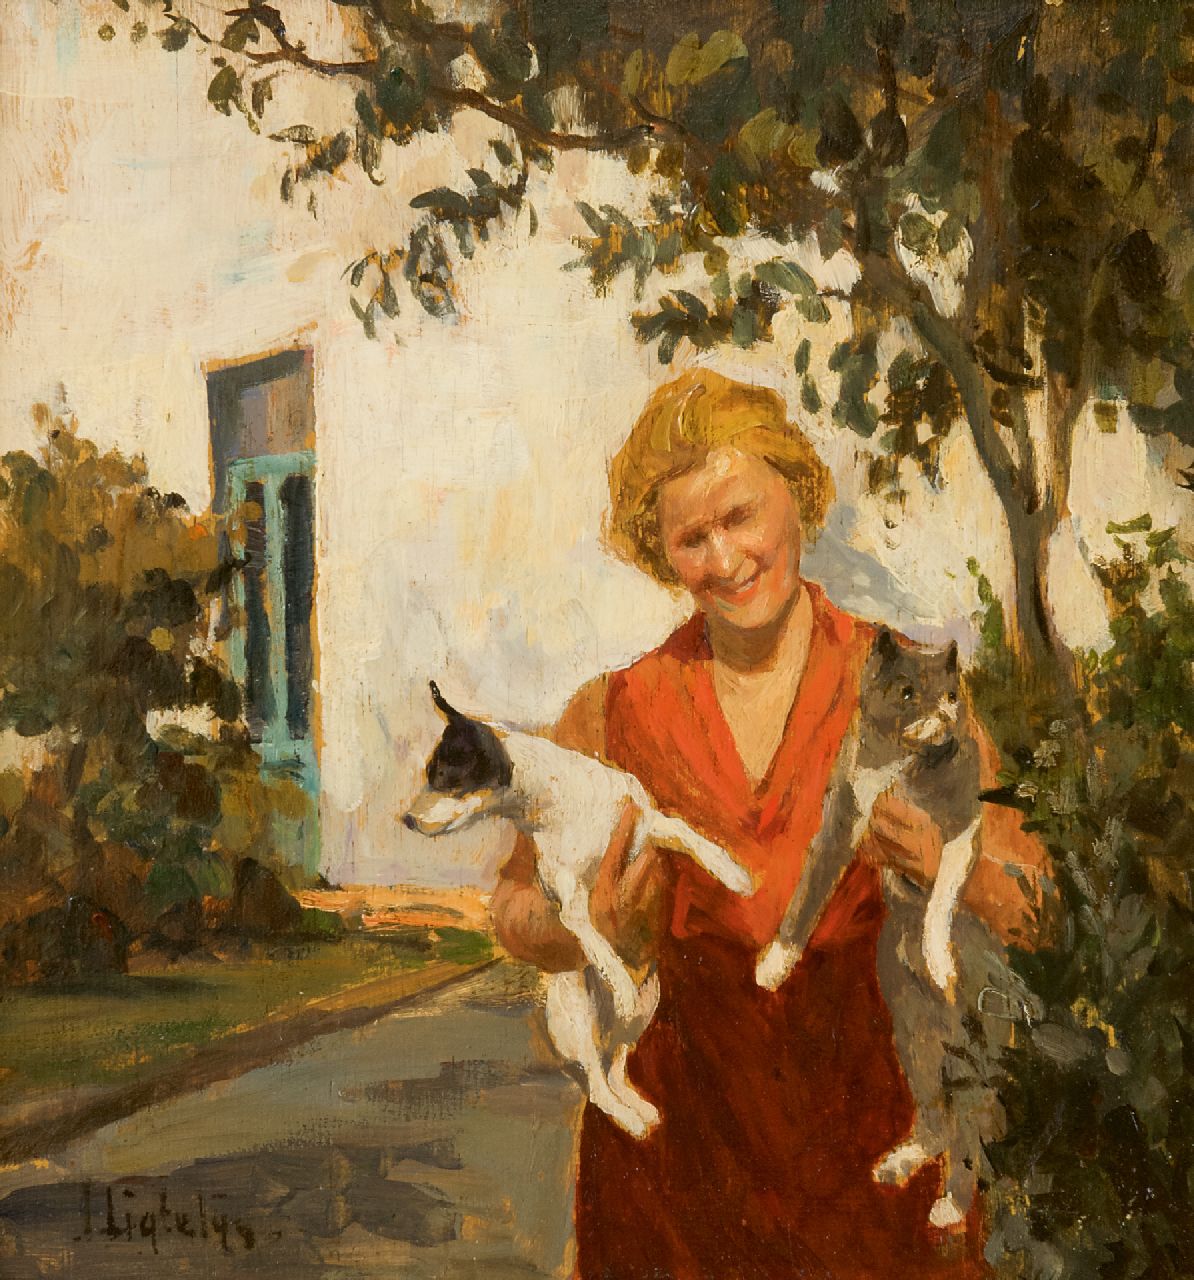 Ligtelijn E.J.  | Evert Jan Ligtelijn | Schilderijen te koop aangeboden | Vrouw met hond en kat in de tuin, olieverf op paneel 24,0 x 22,7 cm, gesigneerd linksonder